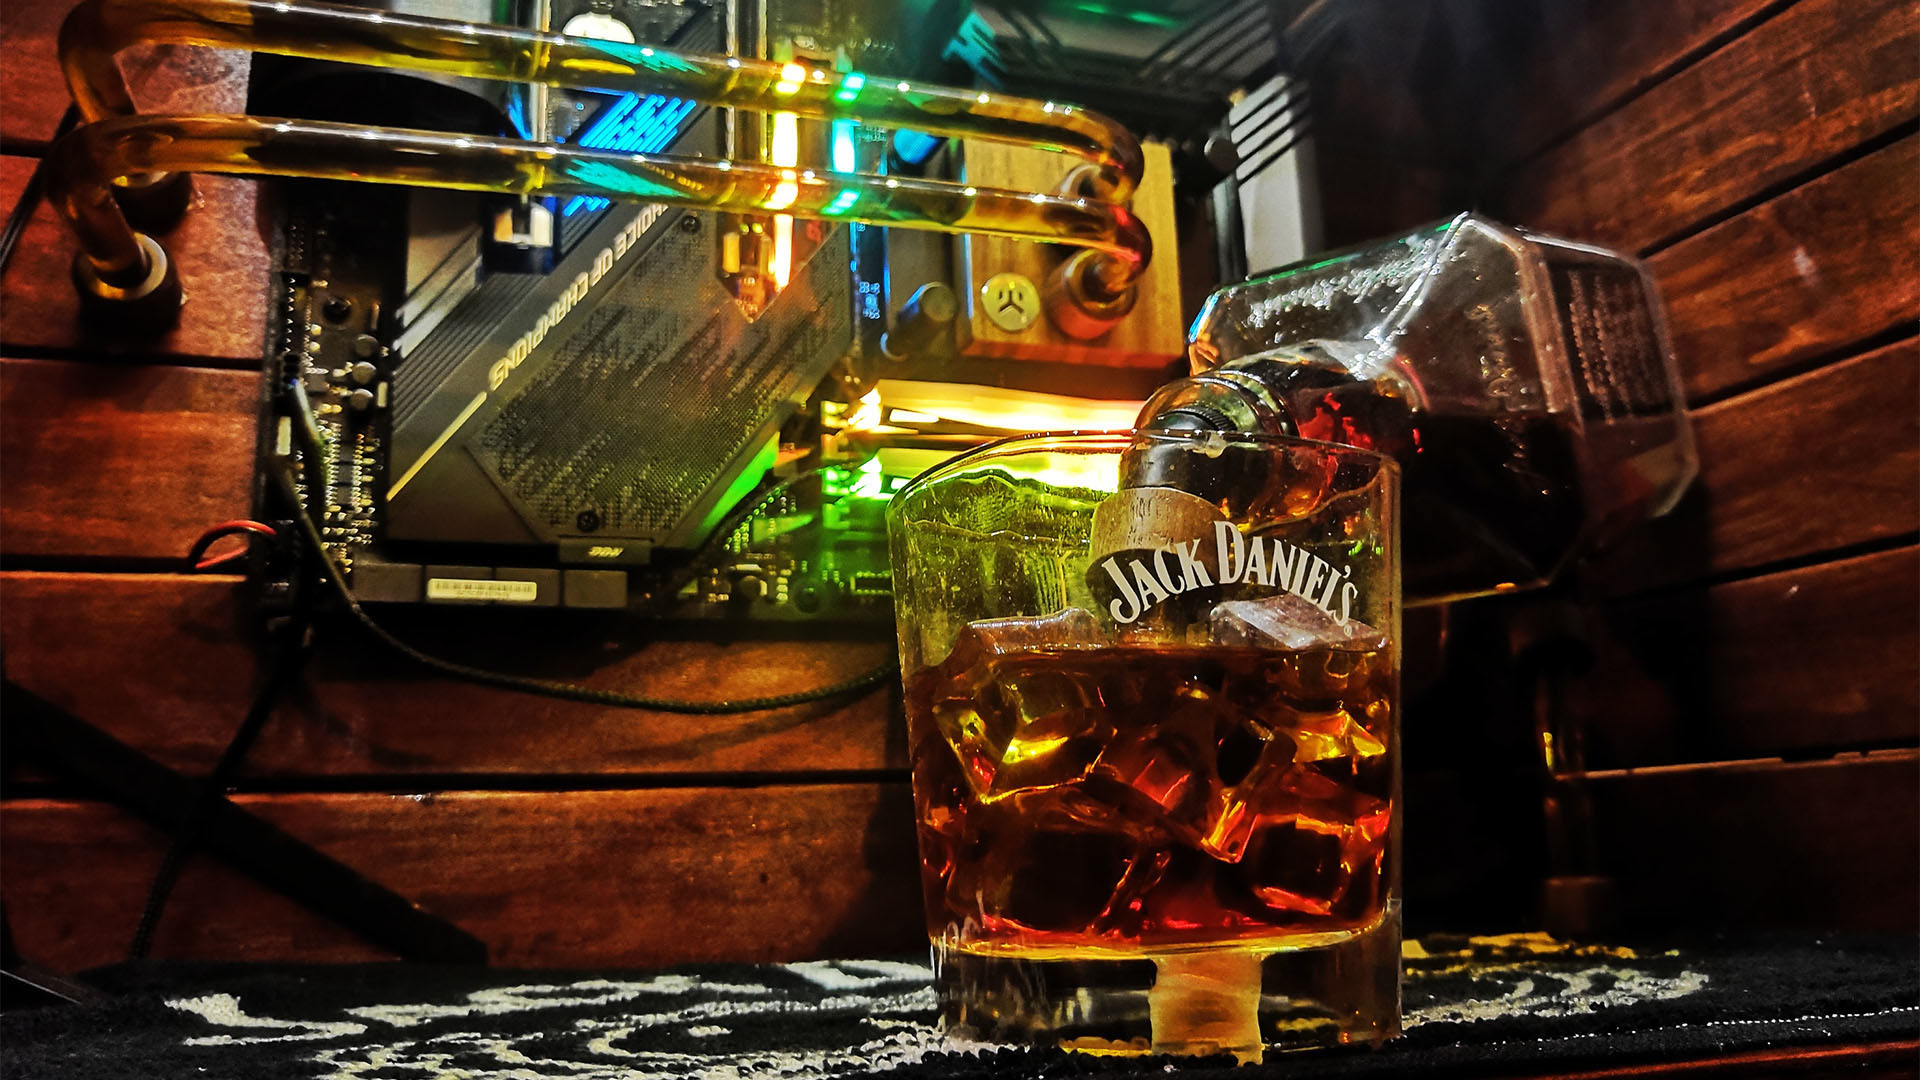 El refrigerante de la PC para juegos Jack Daniel's se vierte en un vaso de Jack Daniel's dentro de la PC